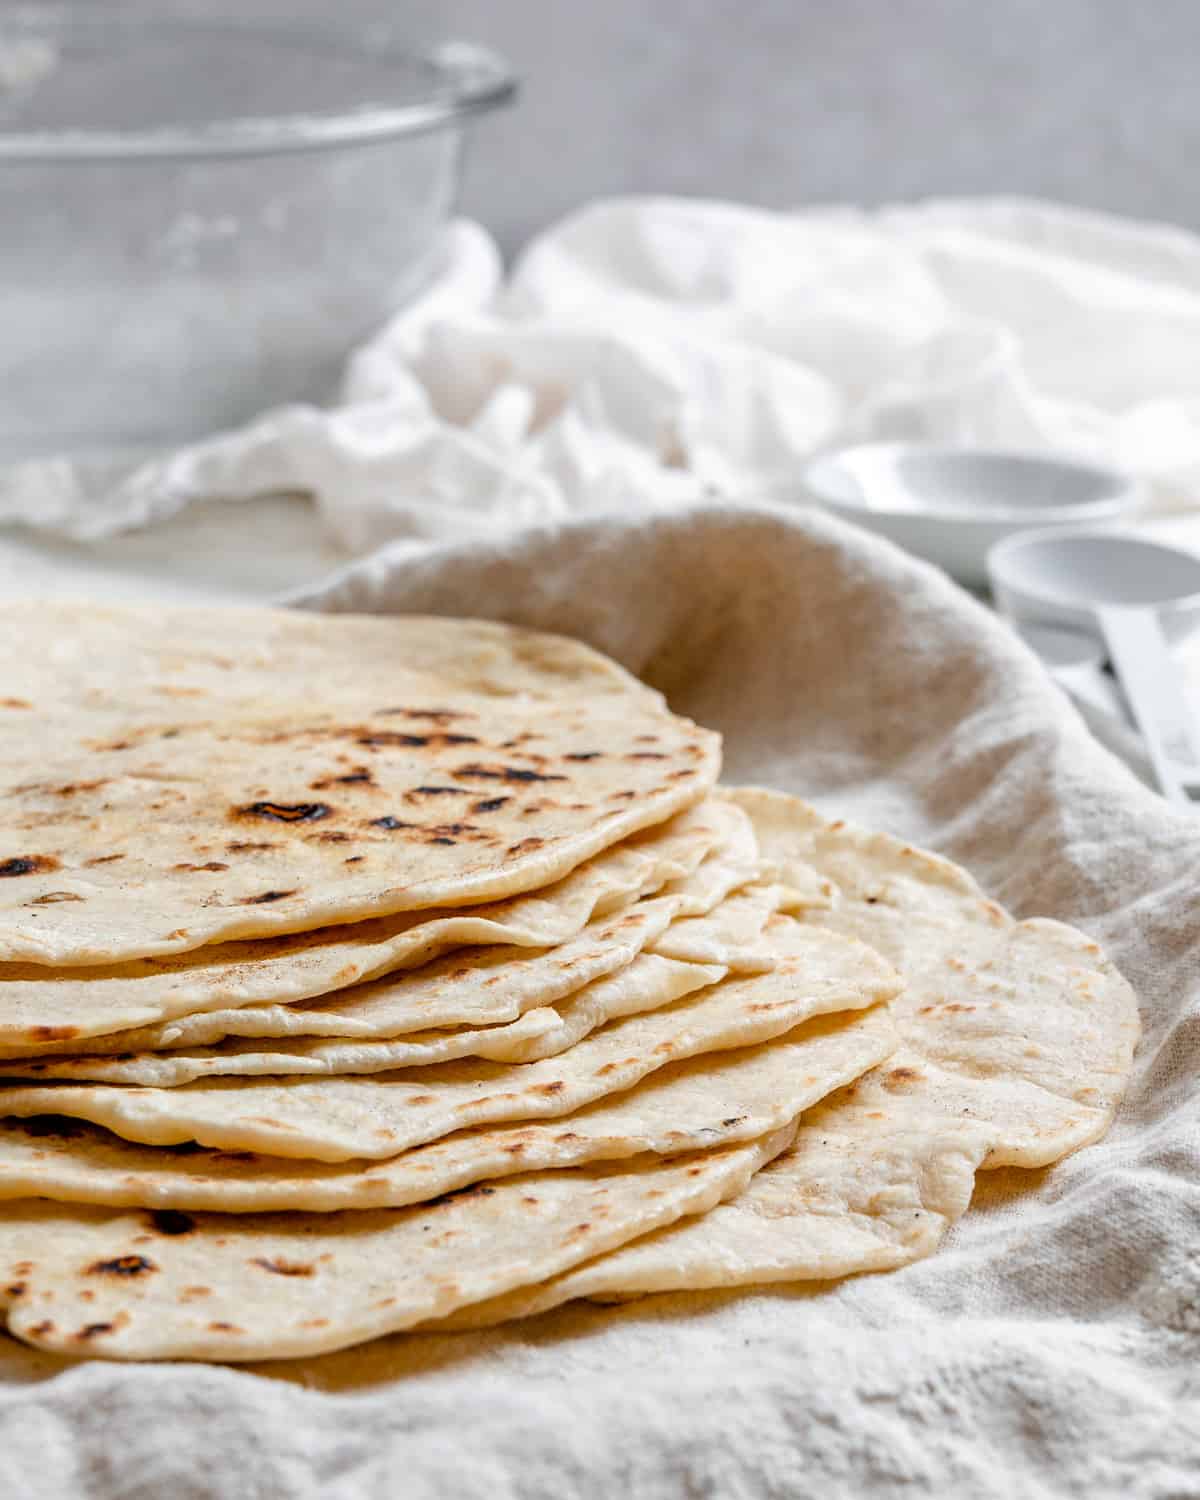 ολοκληρωμένες Tortillas de Harina – Χειροποίητες τορτίγιες από αλεύρι στοιβαγμένες η μία πάνω στην άλλη σε μια λευκή επιφάνεια